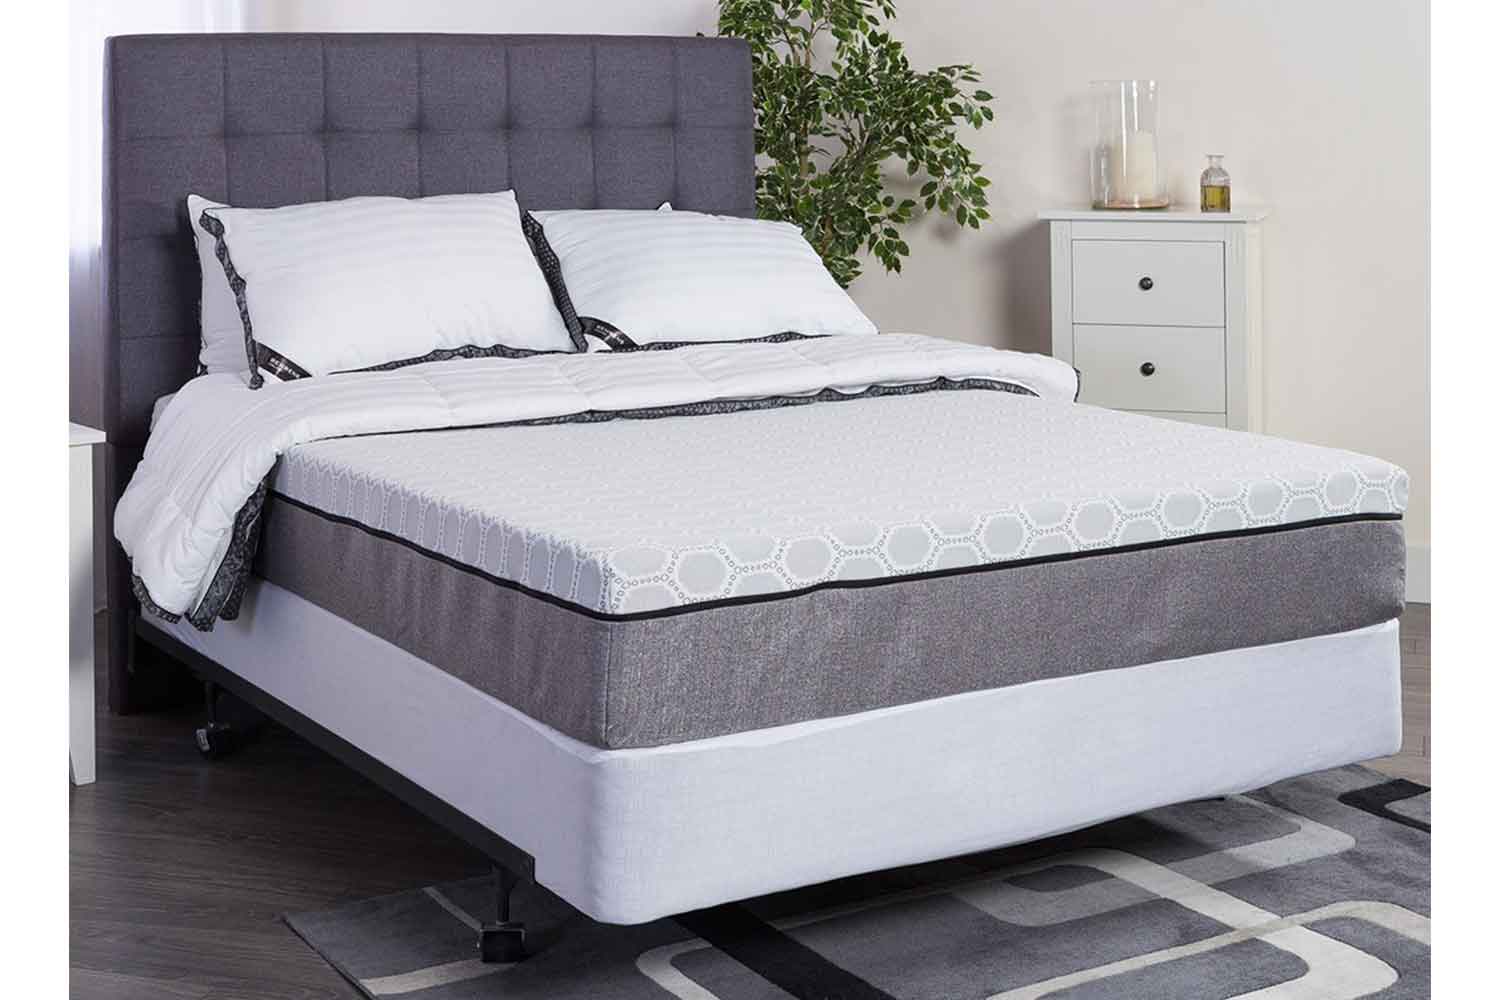 mattress for sale paducah ky